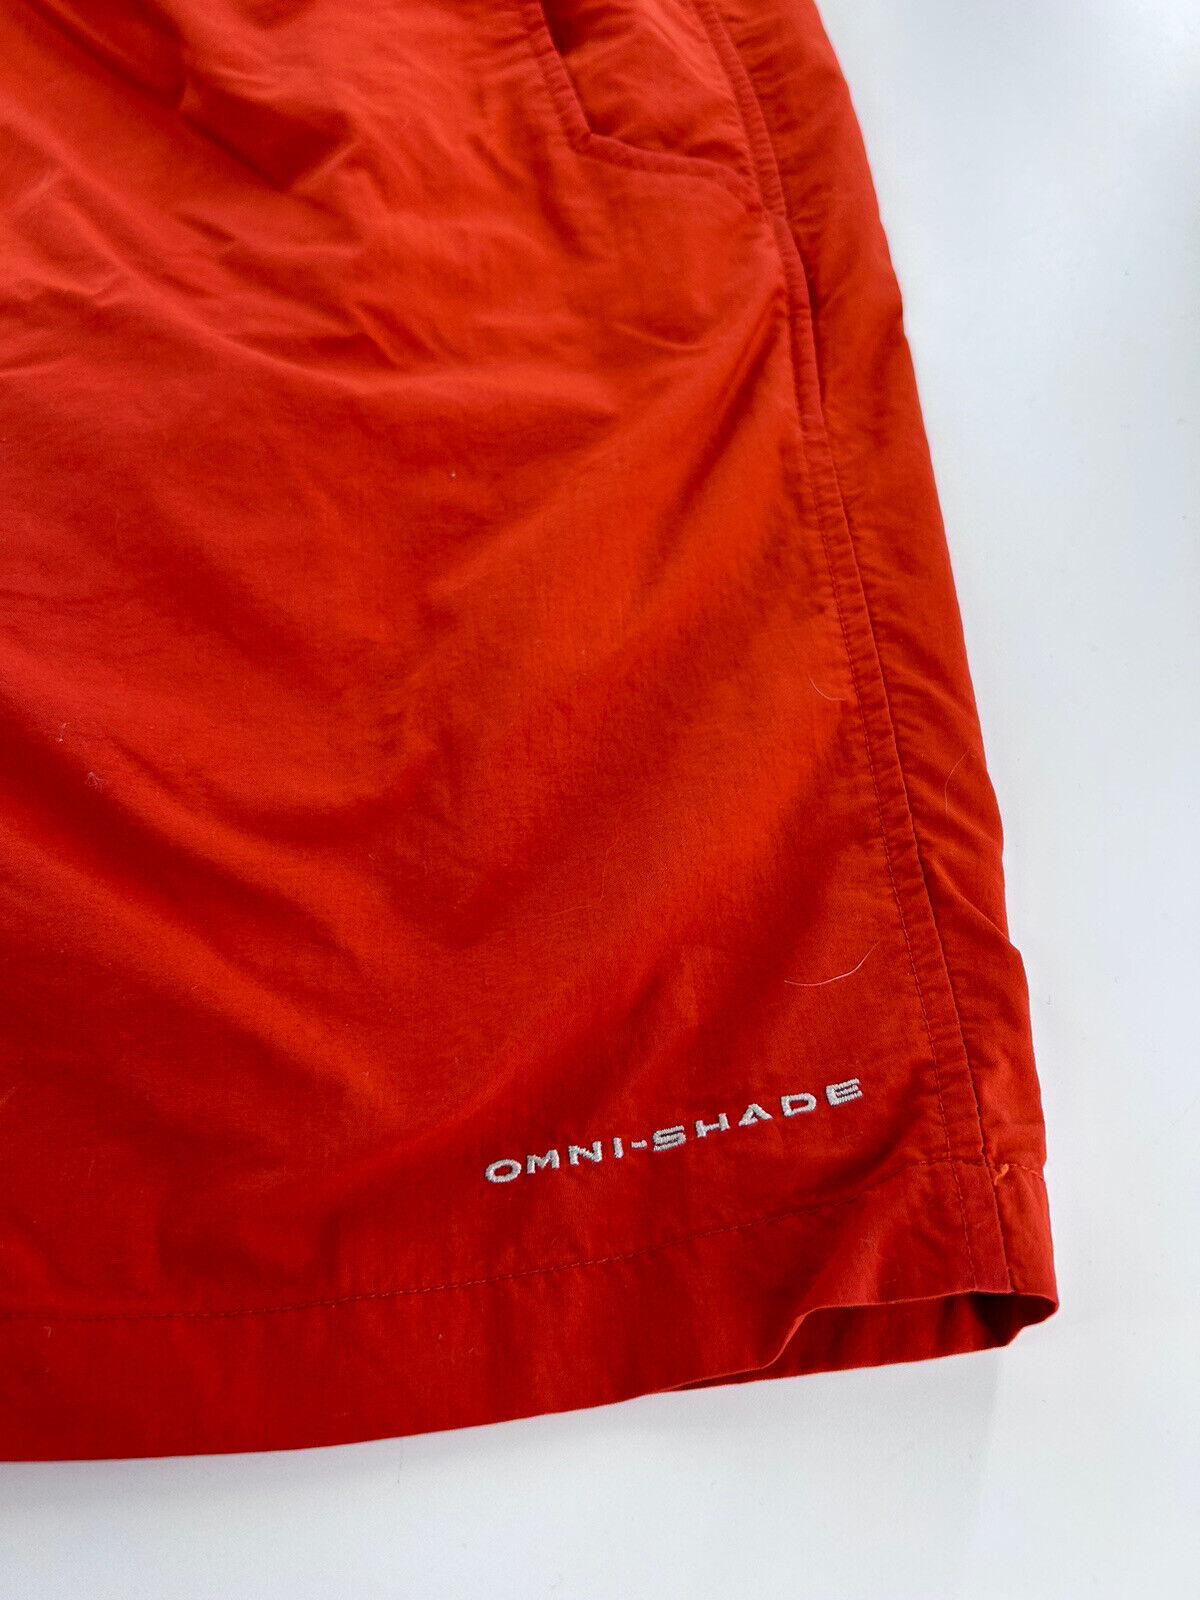 Columbia Pfg Omni-shade Shorts Size 2X Orange - image 3